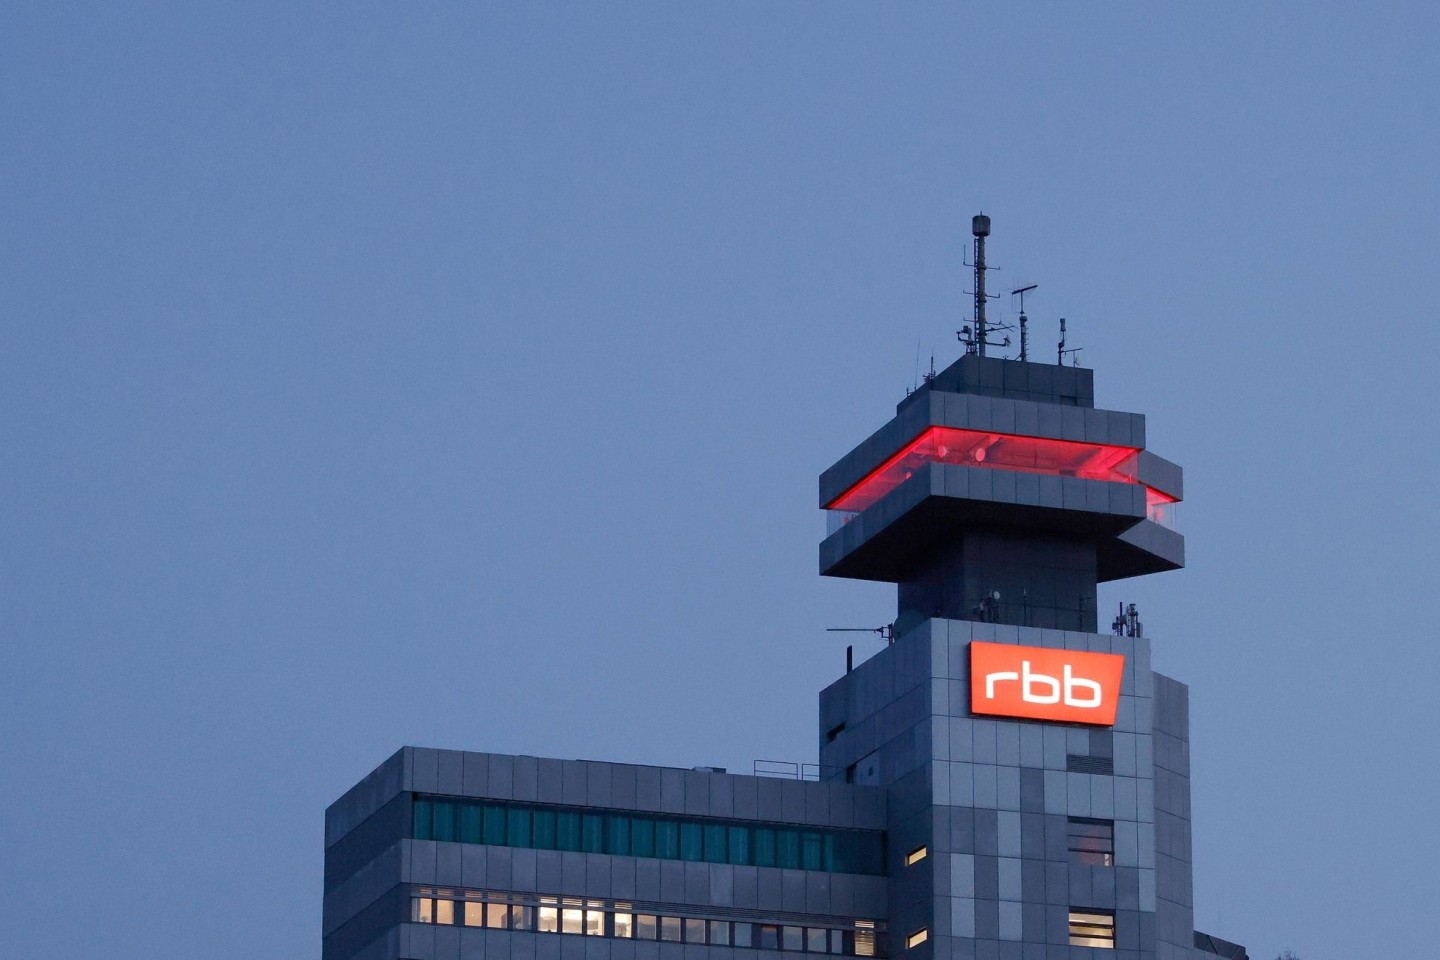 Sitz des RBB an der Masurenallee in Berlin. Der Rundfunkrat hat die RBB-Intendantin Schlesinger abberufen.